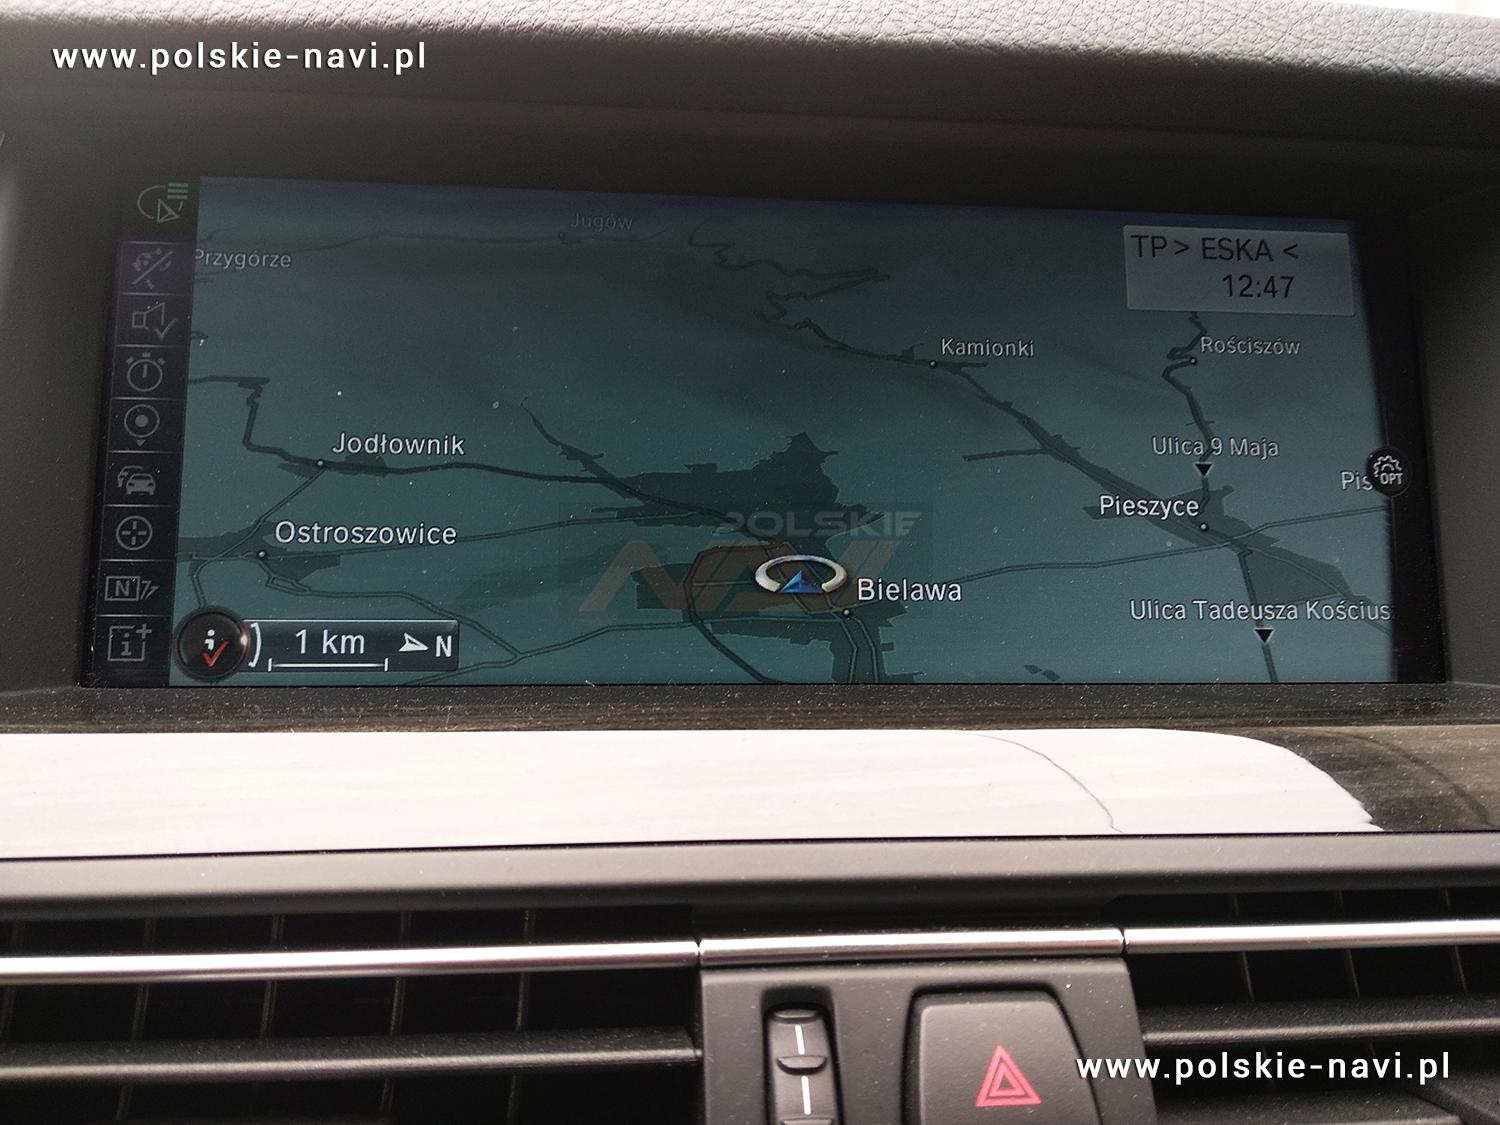 BMW NBT Tłumaczenie nawigacji - Polskie menu